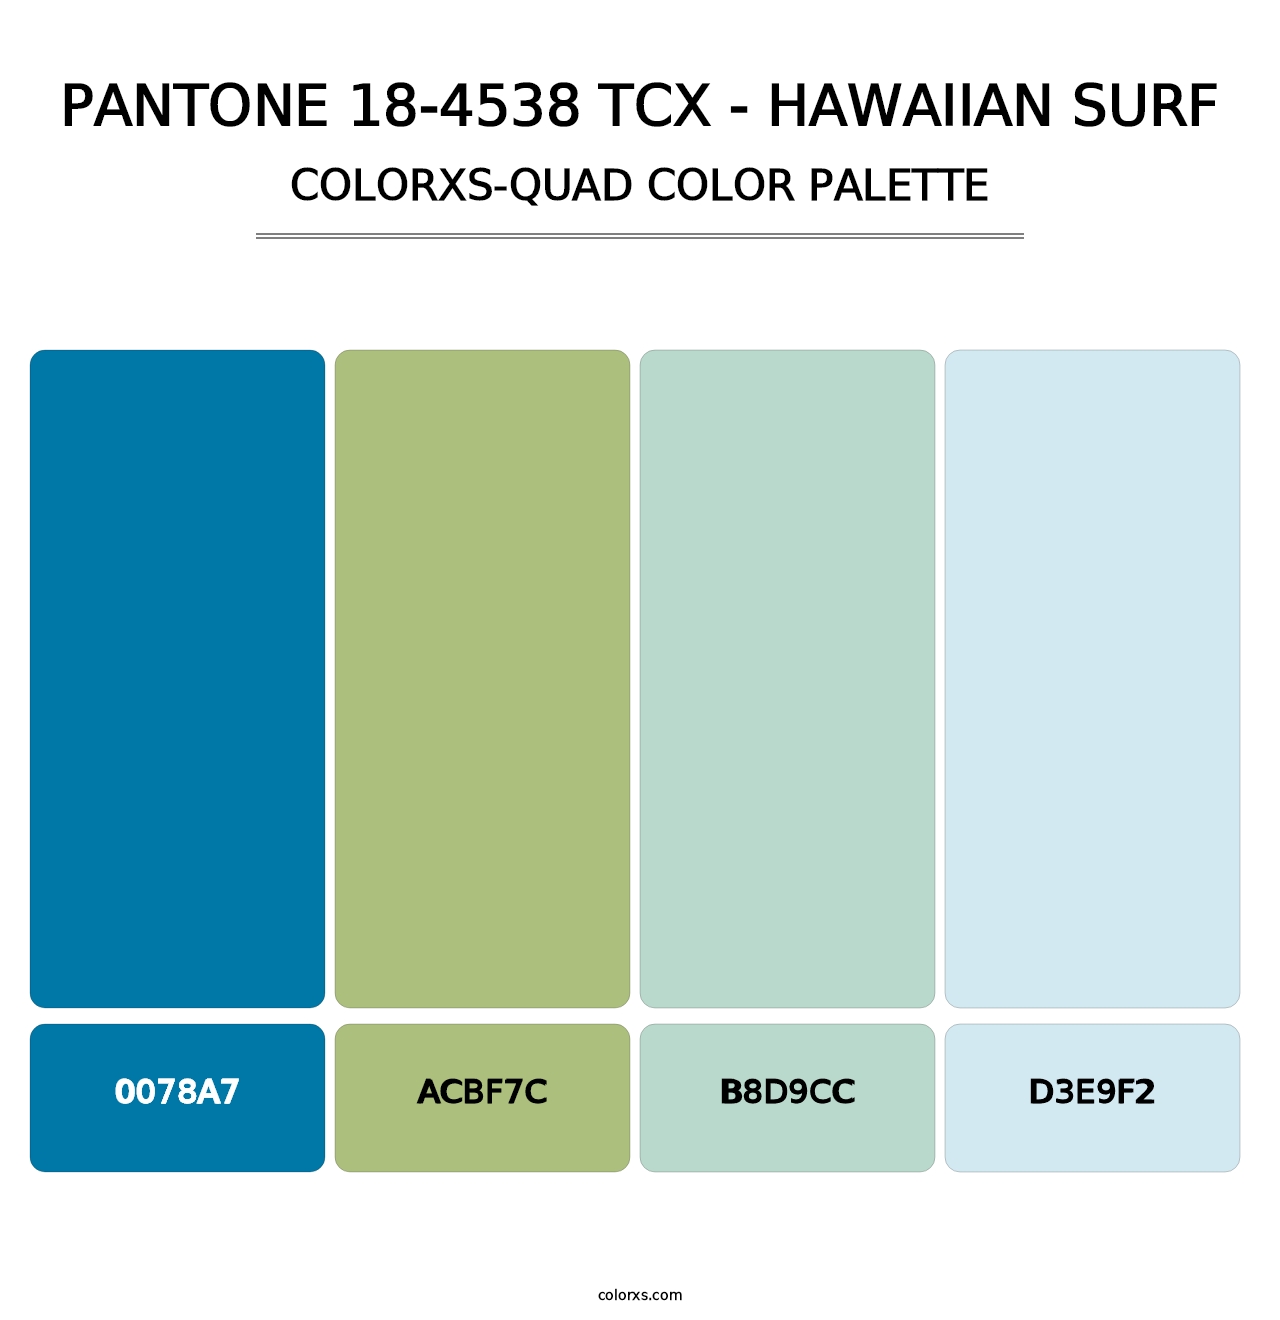 PANTONE 18-4538 TCX - Hawaiian Surf - Colorxs Quad Palette